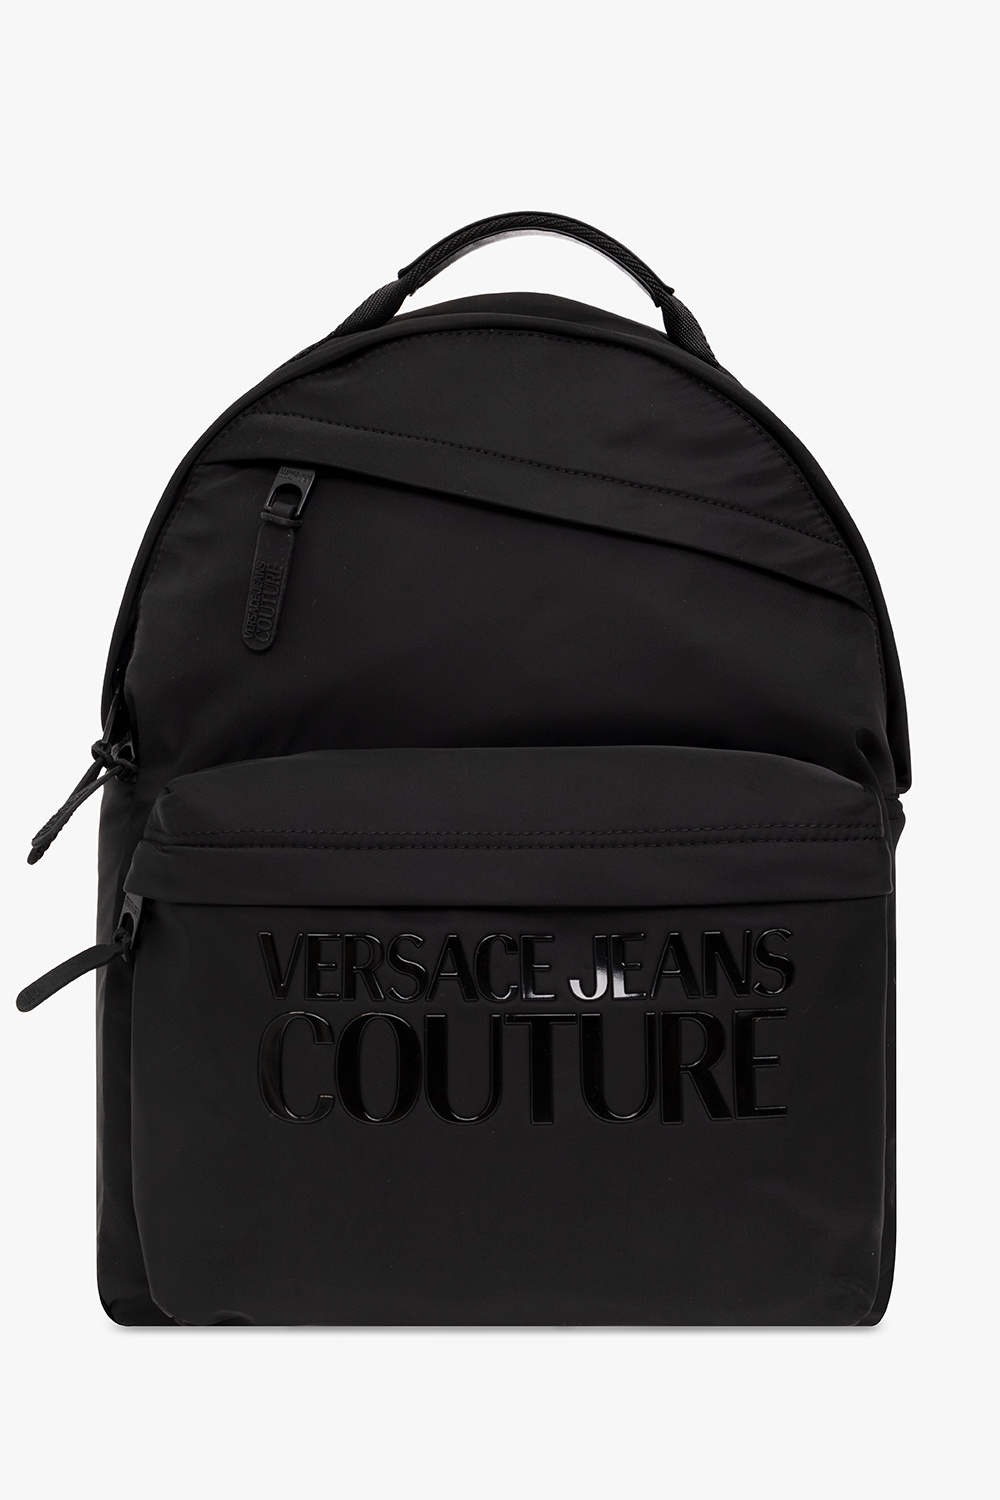 Versace Unlined jeans Couture Roland Mouret Adamson dress